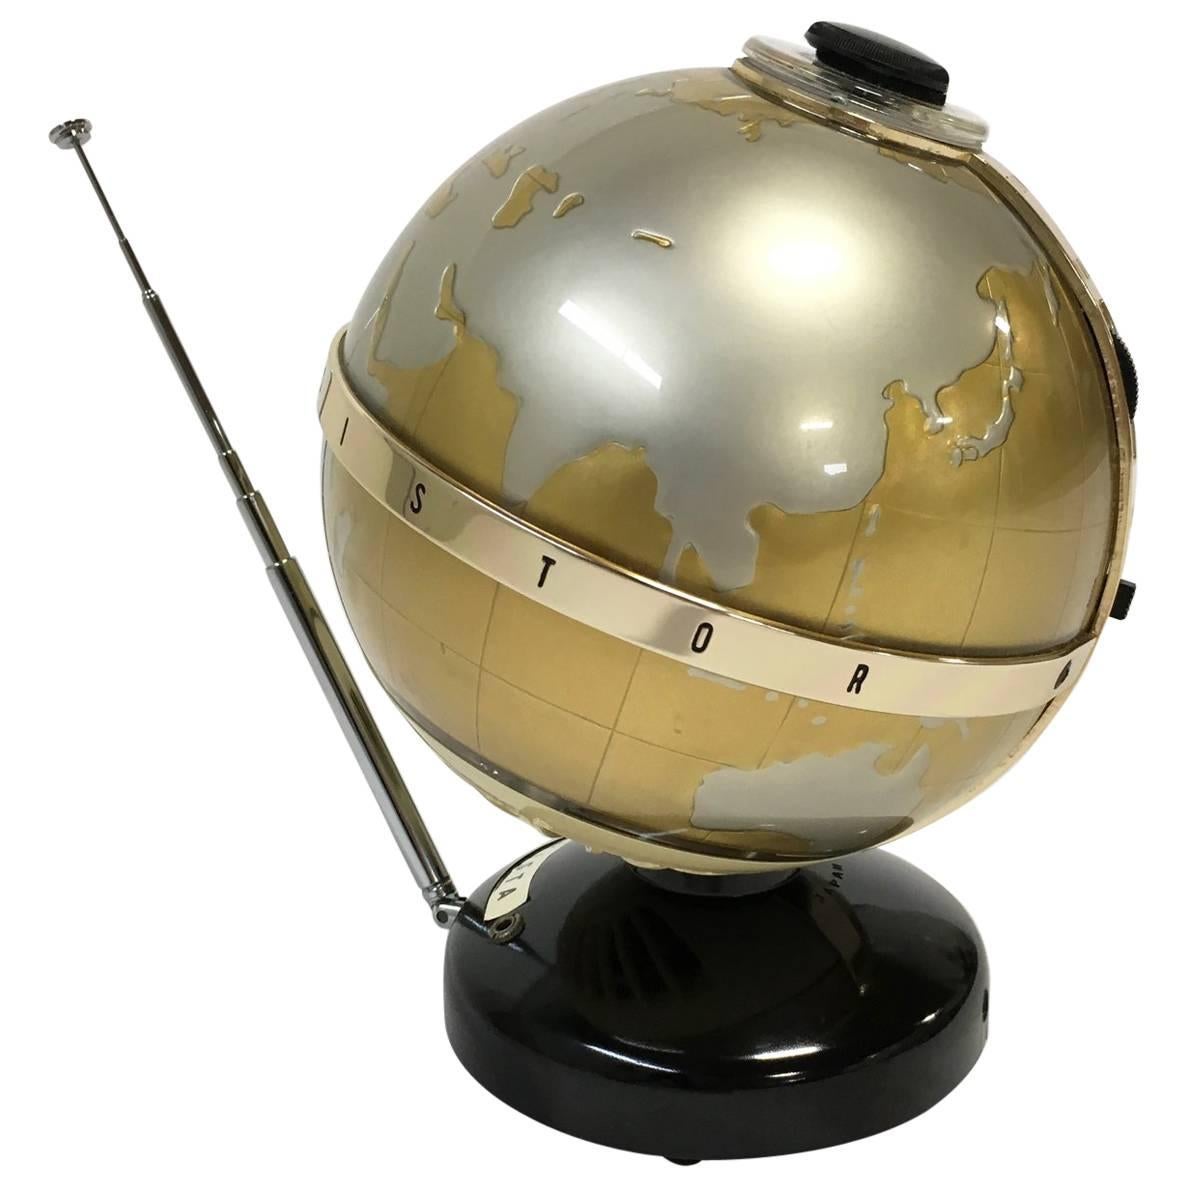 Vista Globe Transistor Radio, Model NTR-6G For Sale